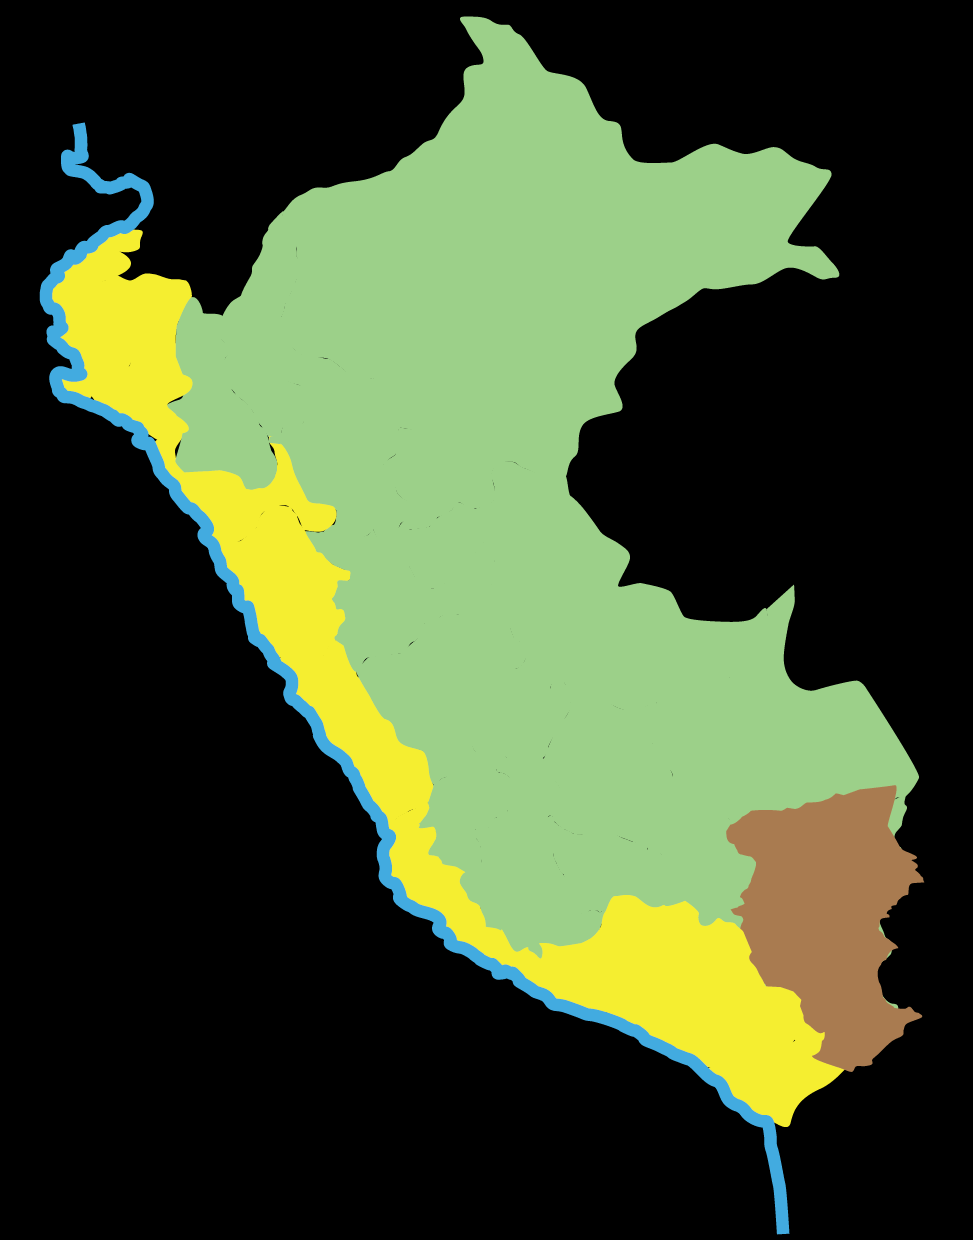 Plan Nacional de Recurso Hídricos El Agua en el Perú D.S.